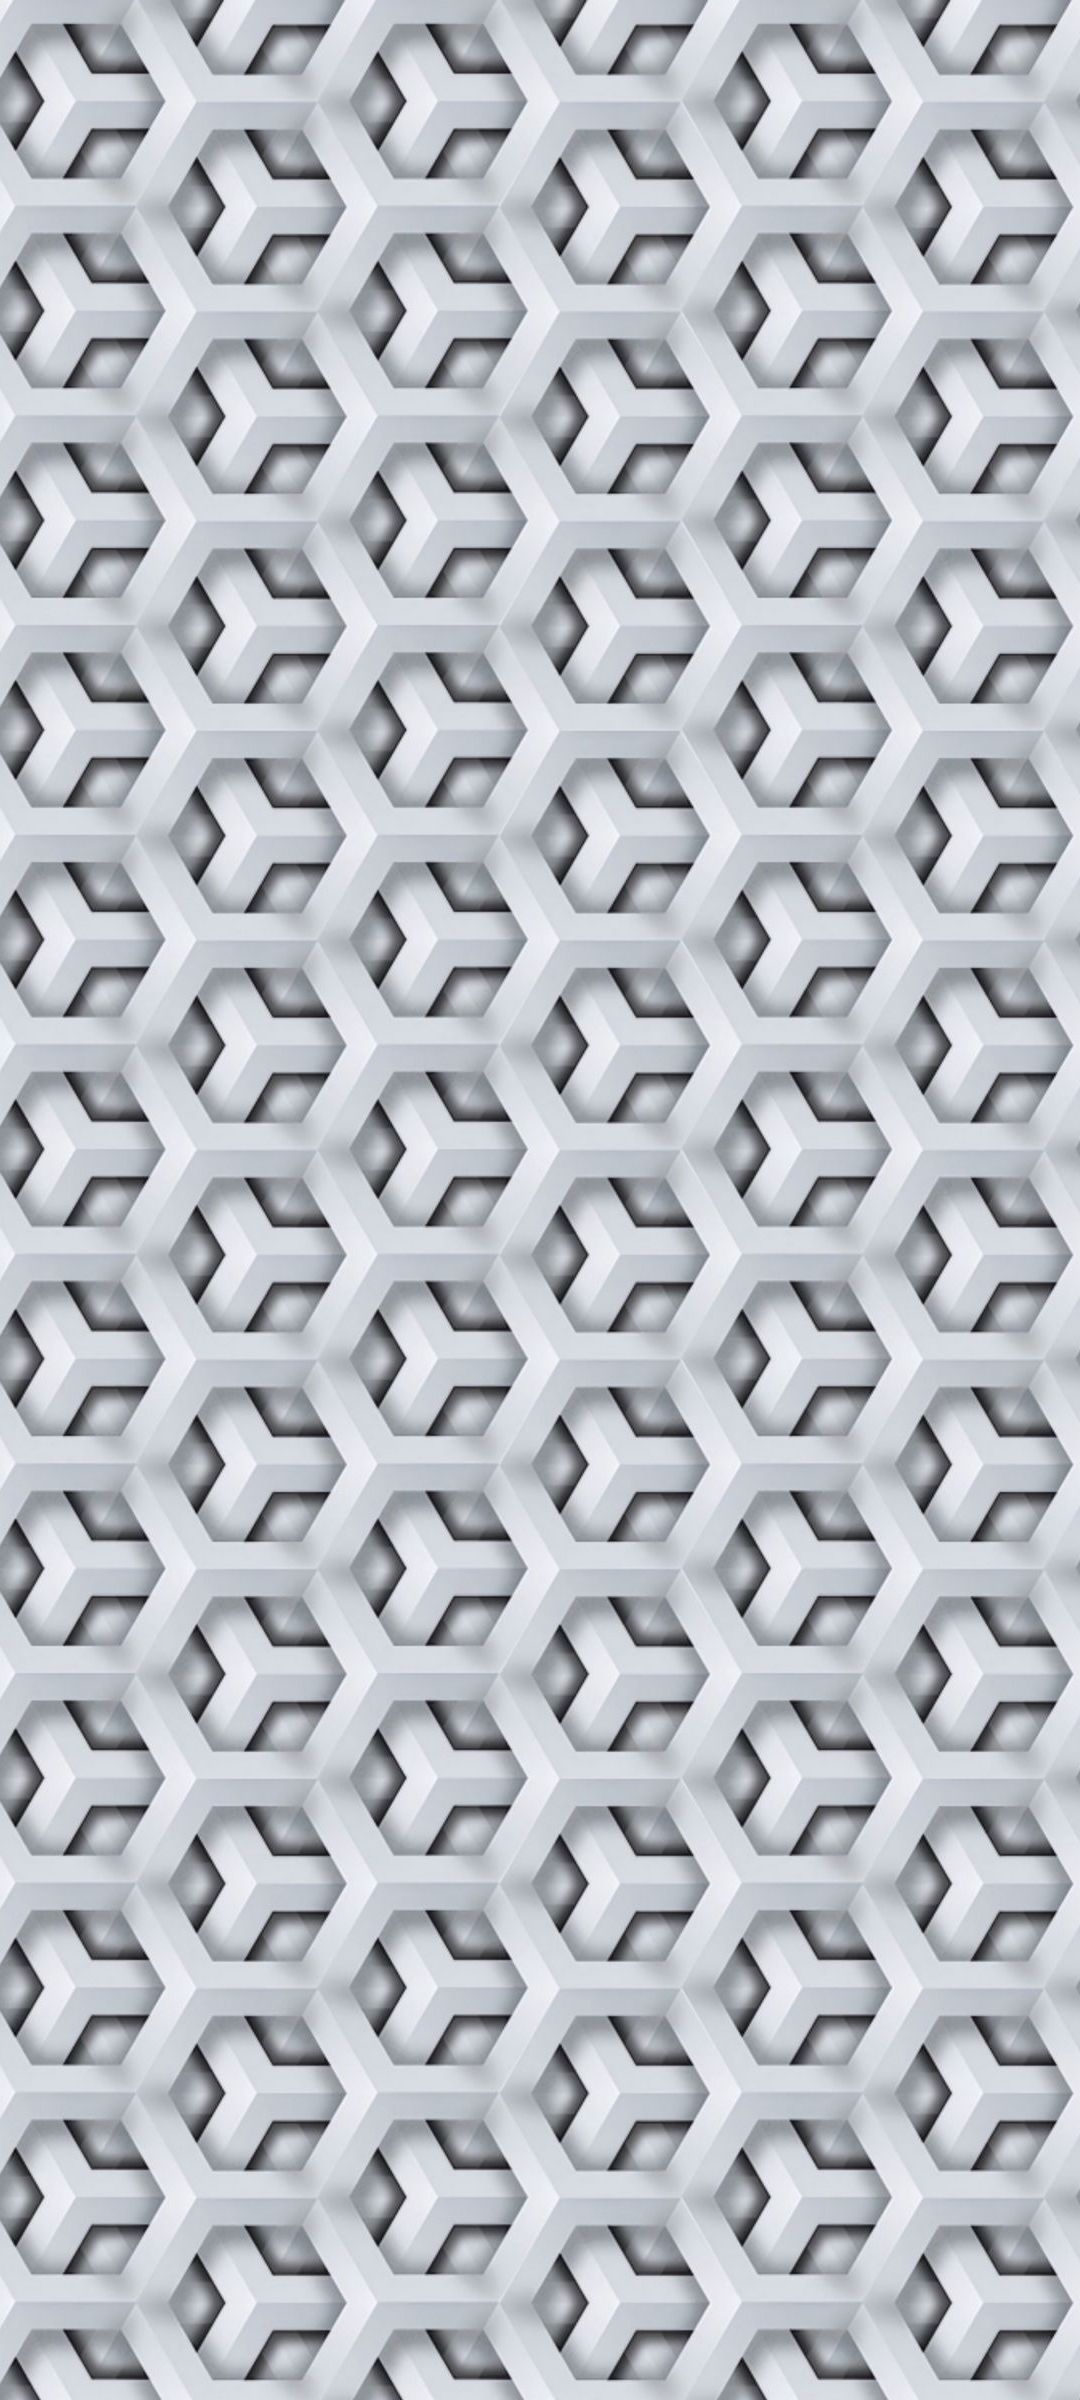 立体感のある白の六角形の集合体 Oppo Reno3 A Androidスマホ壁紙 待ち受け スマラン